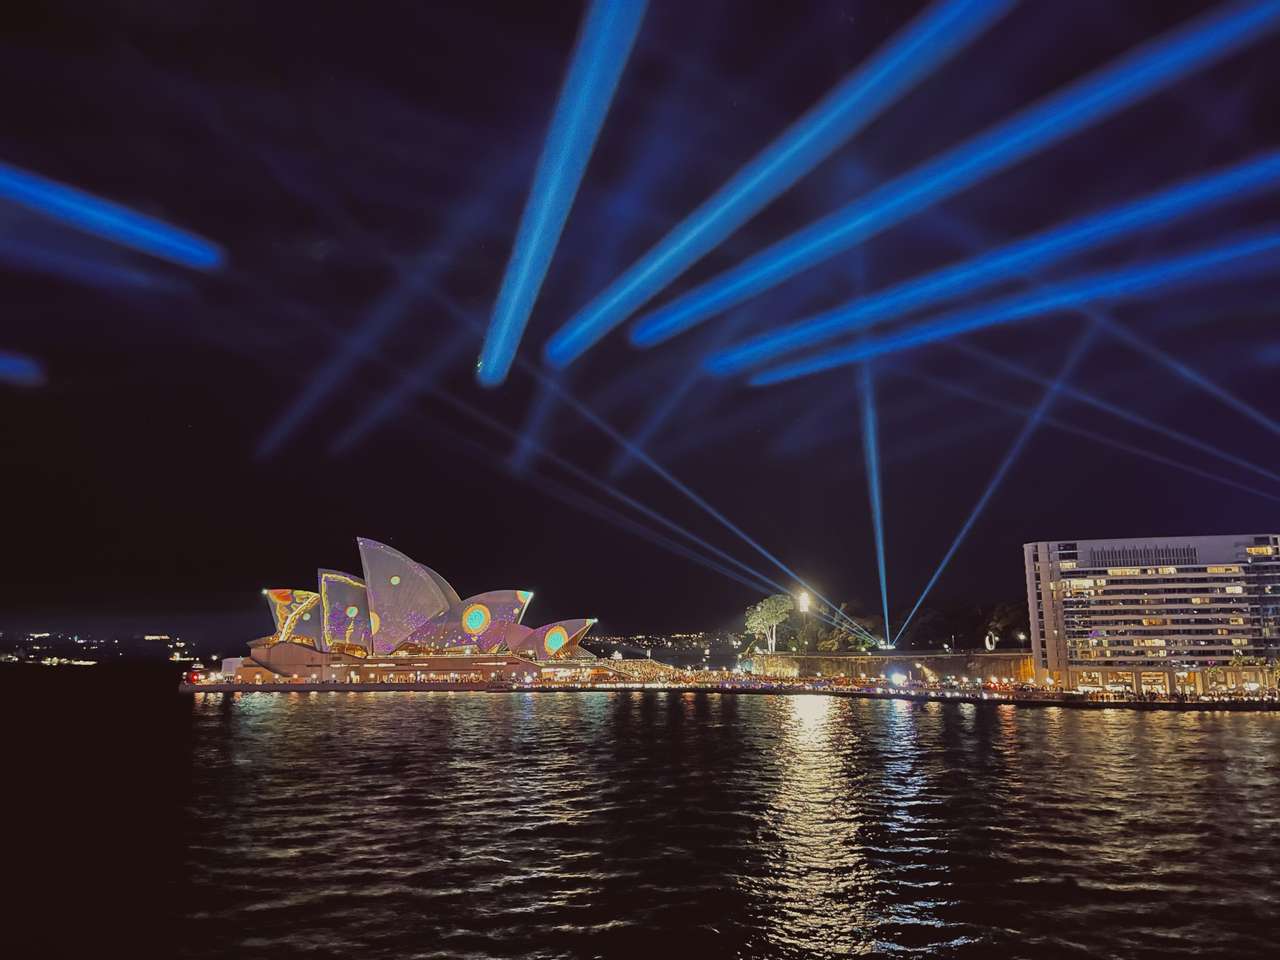 Сиднейский оперный театр пазл онлайн из фото